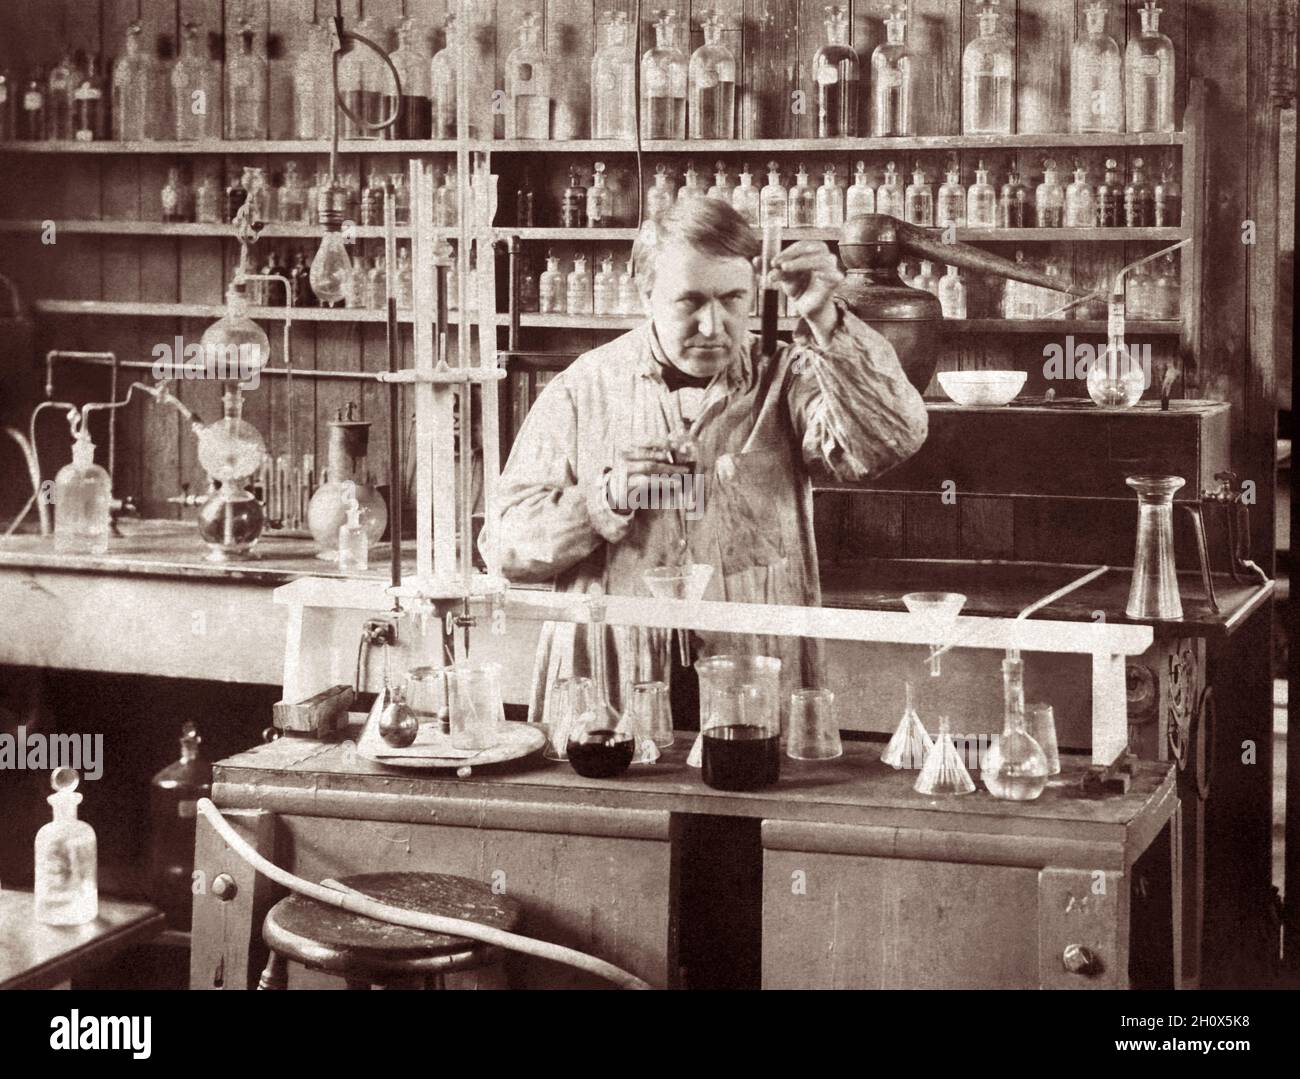 Thomas Alva Edison (1847–1931), qui a été décrit comme le plus grand inventeur des États-Unis, travaille dans le bâtiment du département de chimie de son complexe de laboratoire West Orange, New Jersey, en 1890.(ÉTATS-UNIS) Banque D'Images